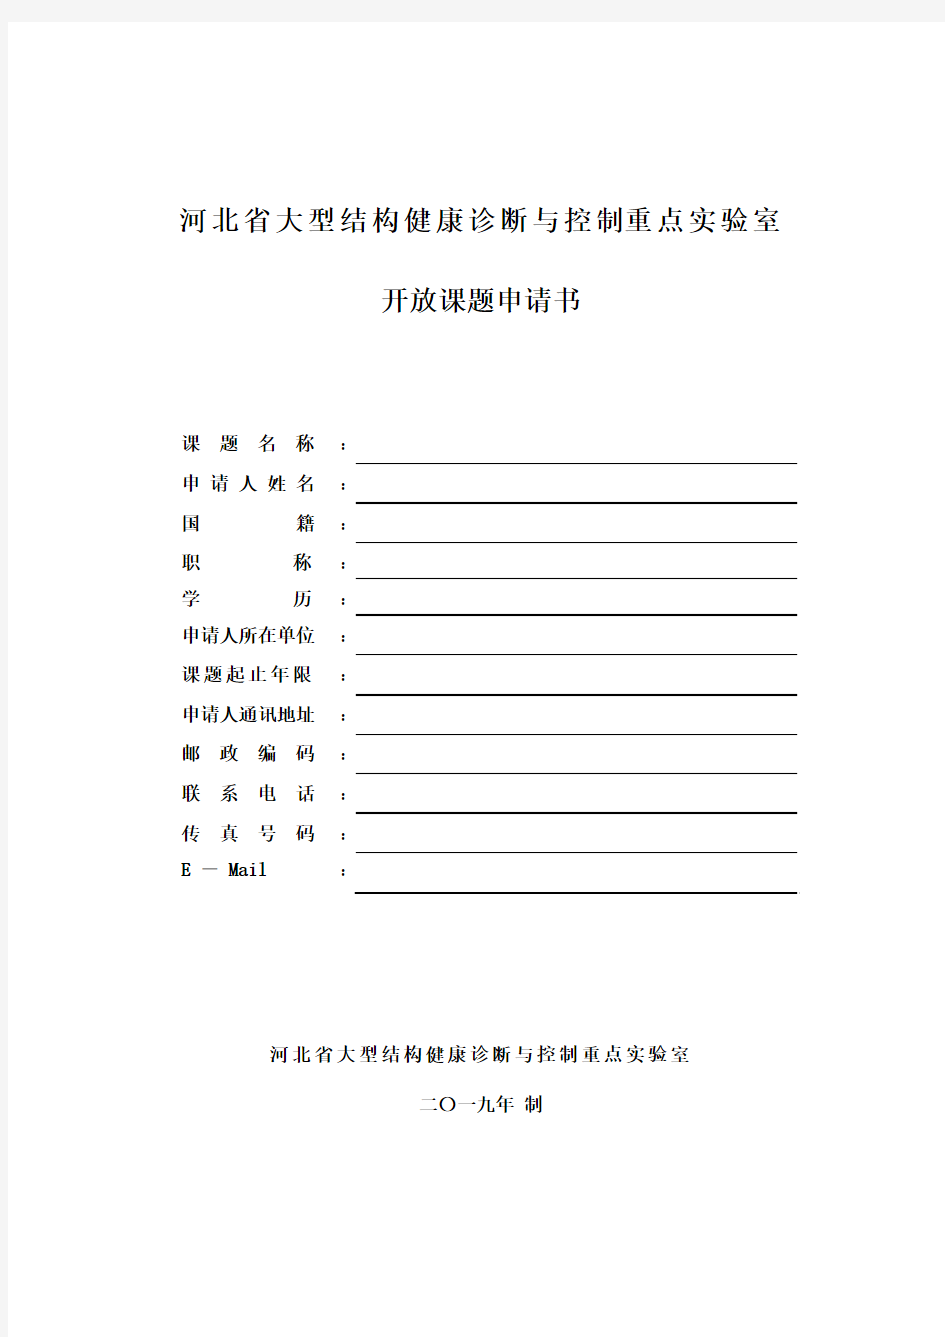 河北省大型结构健康诊断与控制重点实验室开放课题申请书